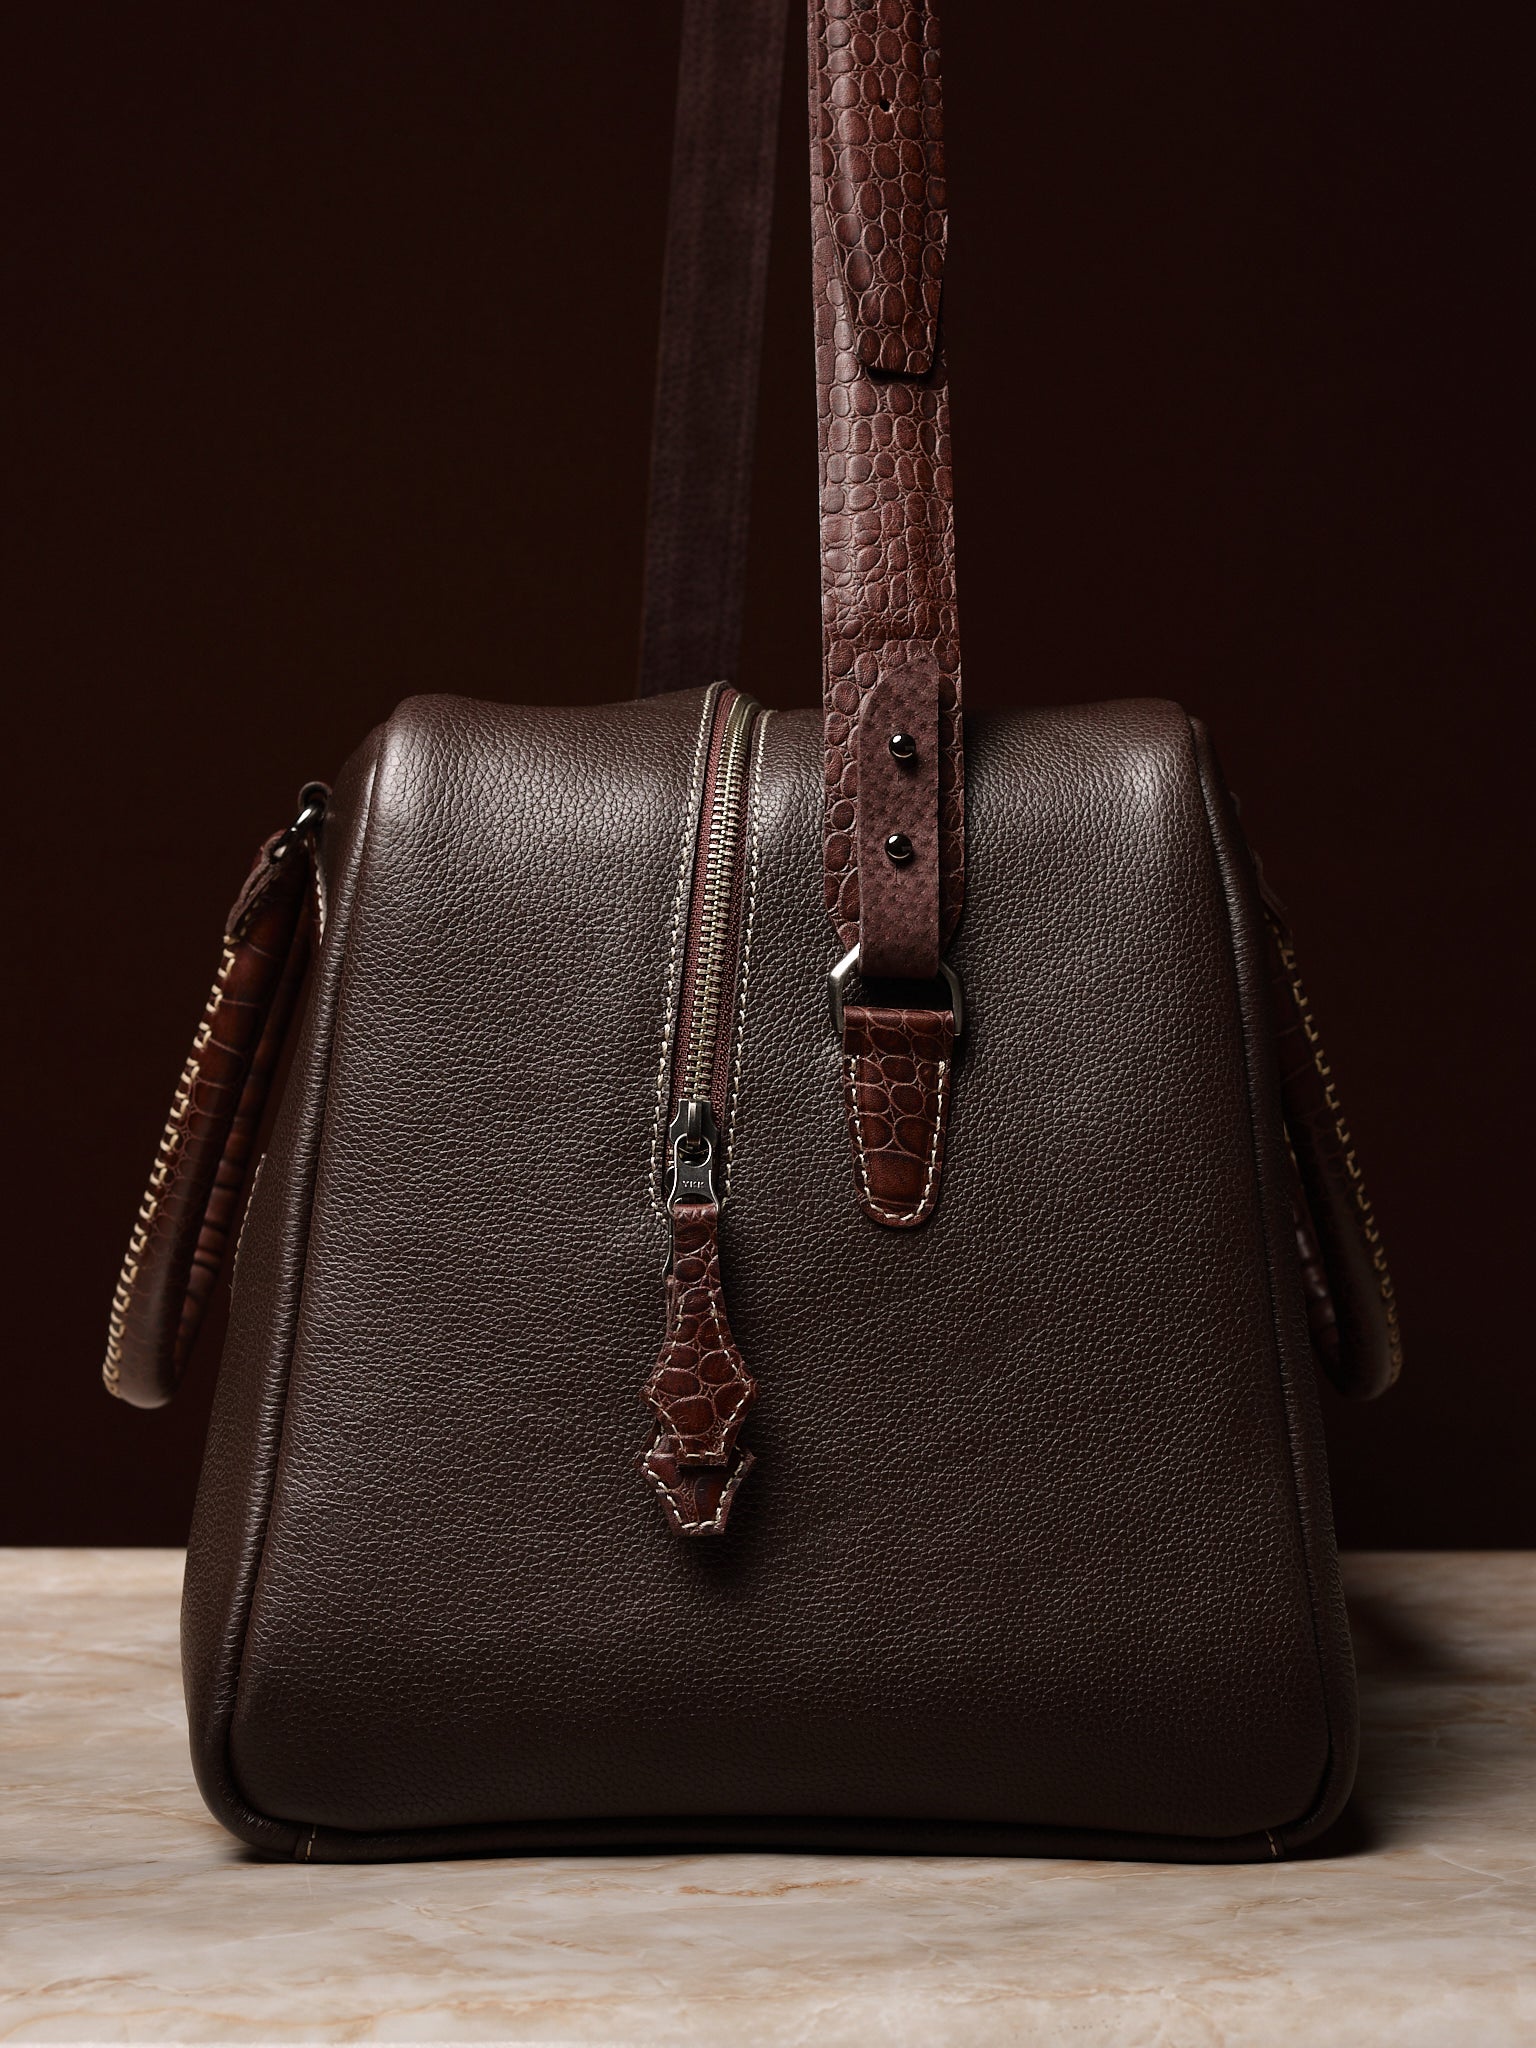 Crocodile Print Shoulder Strap. Leather Weekender Bag Dark Brown by Capra Leather